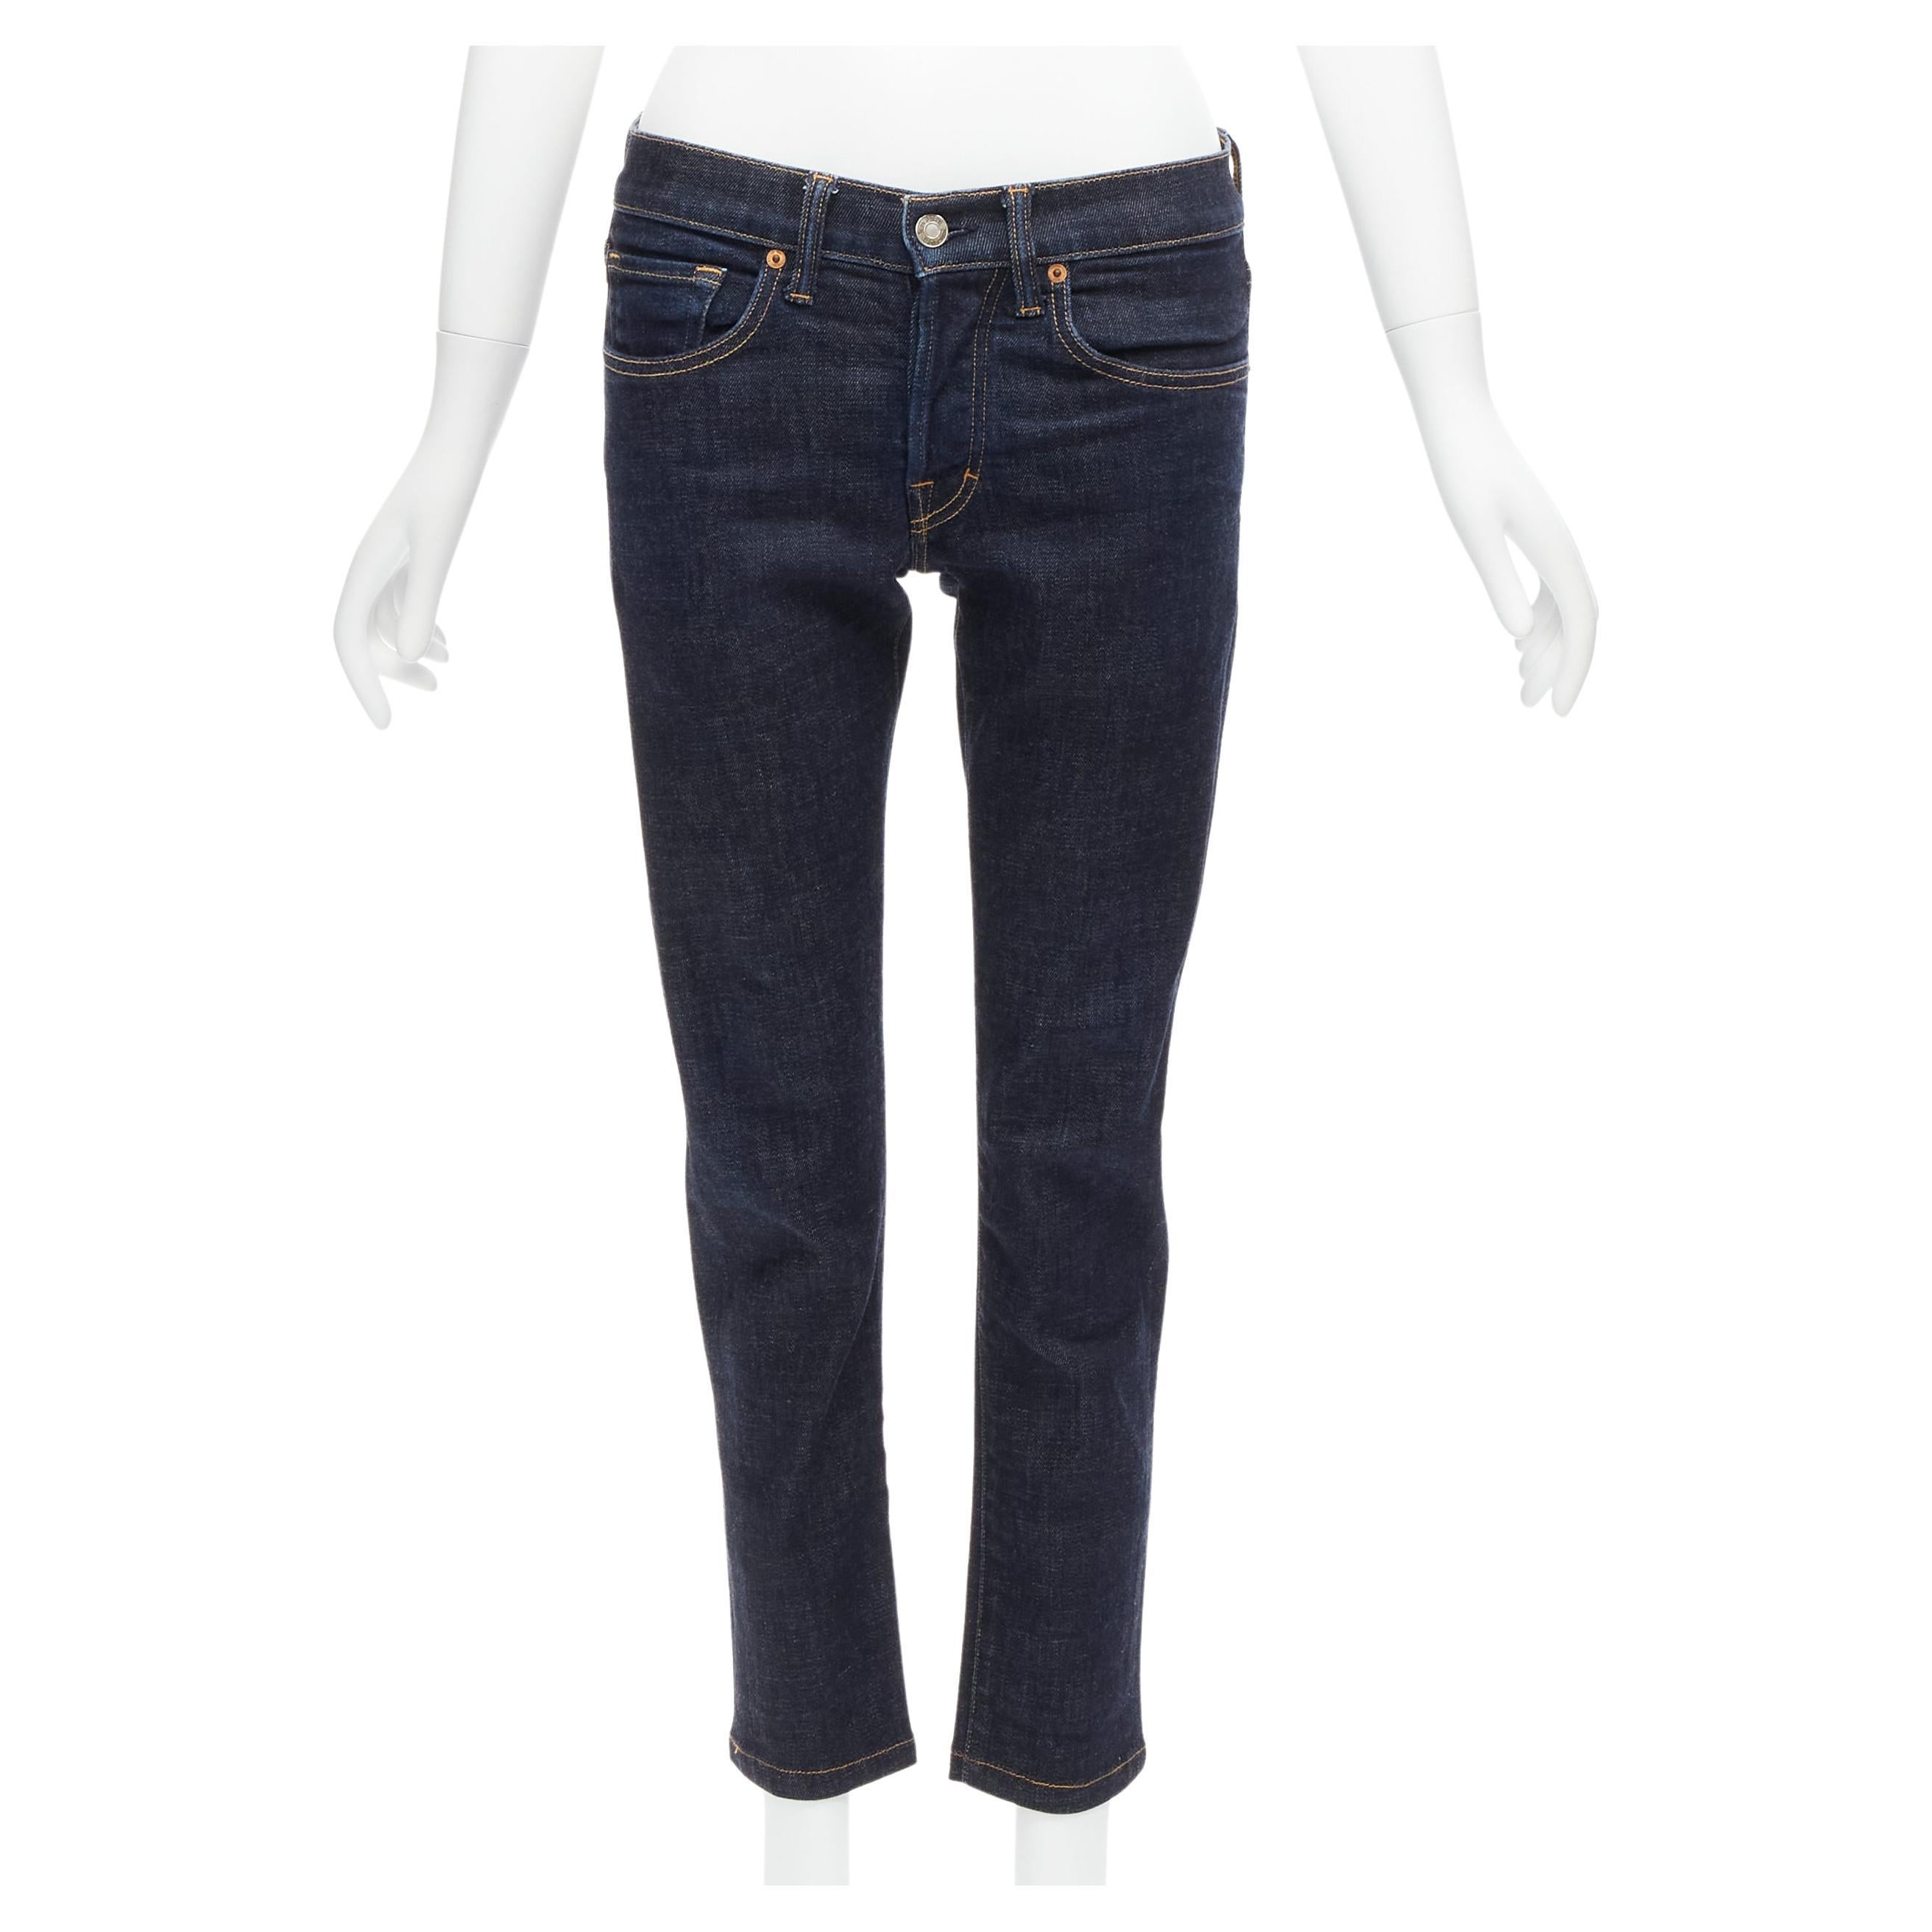 Jeans cropped TOM FORD bleu foncé classique en denim délavé avec étiquette logo 28" en vente